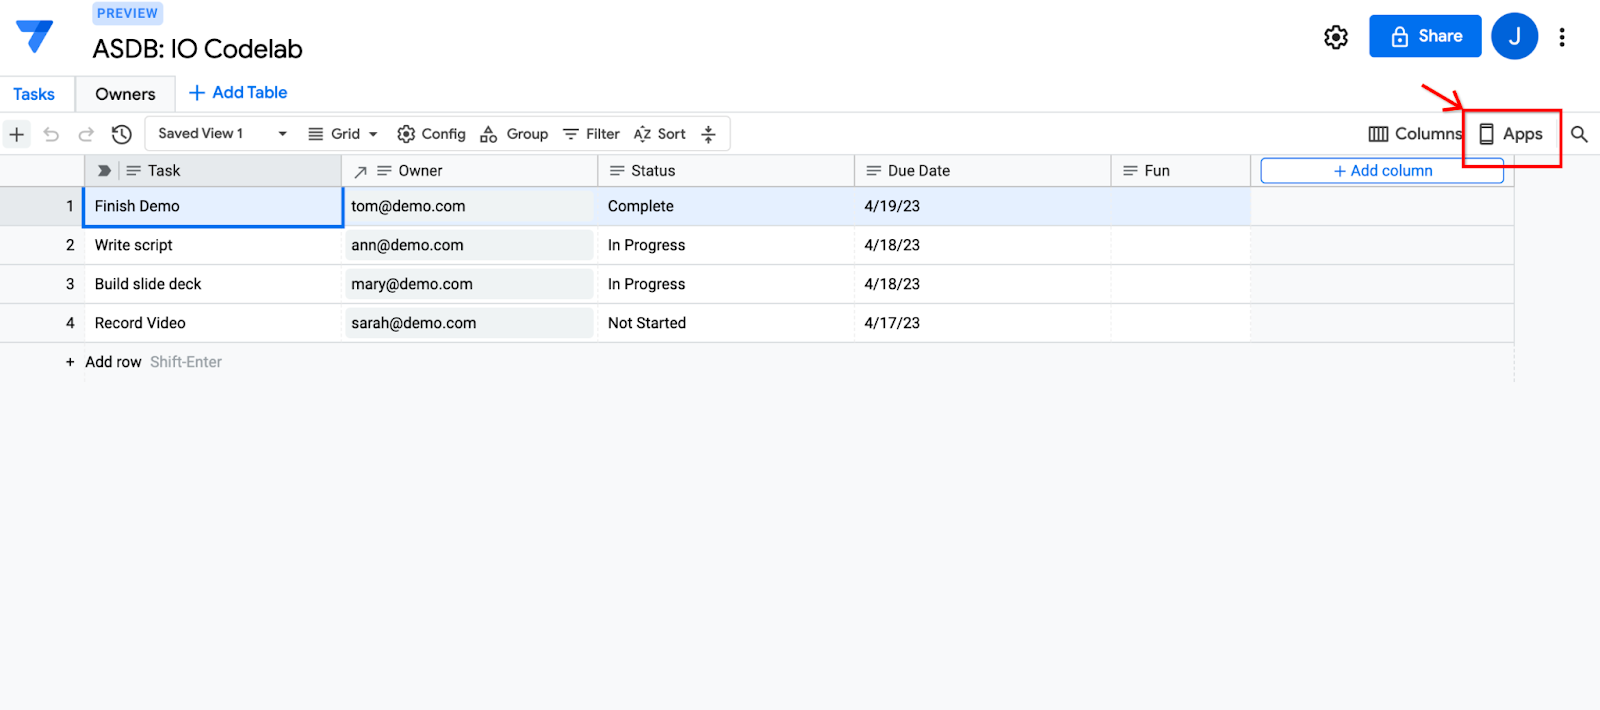 Captura de pantalla del editor de bases de datos de AppSheet con el botón “Apps” destacado